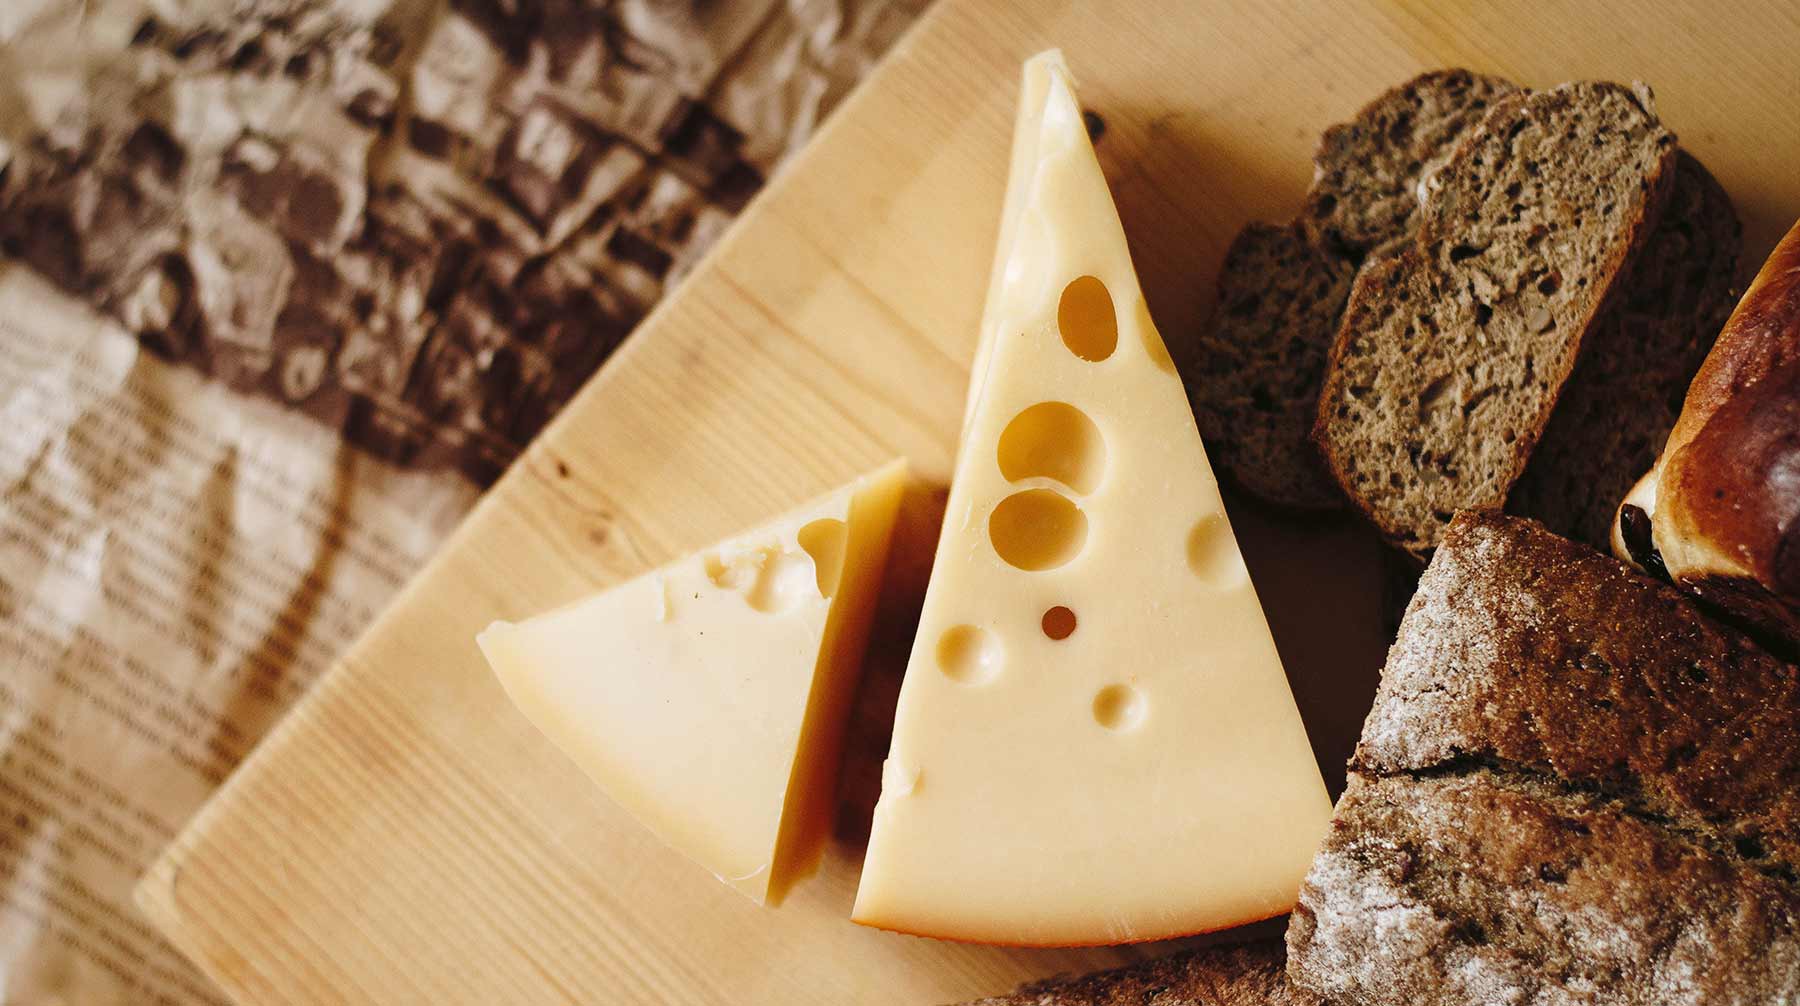 Dailystorm - Сыр по народным методам: в Москве появилась продукция владимирских сыроваров